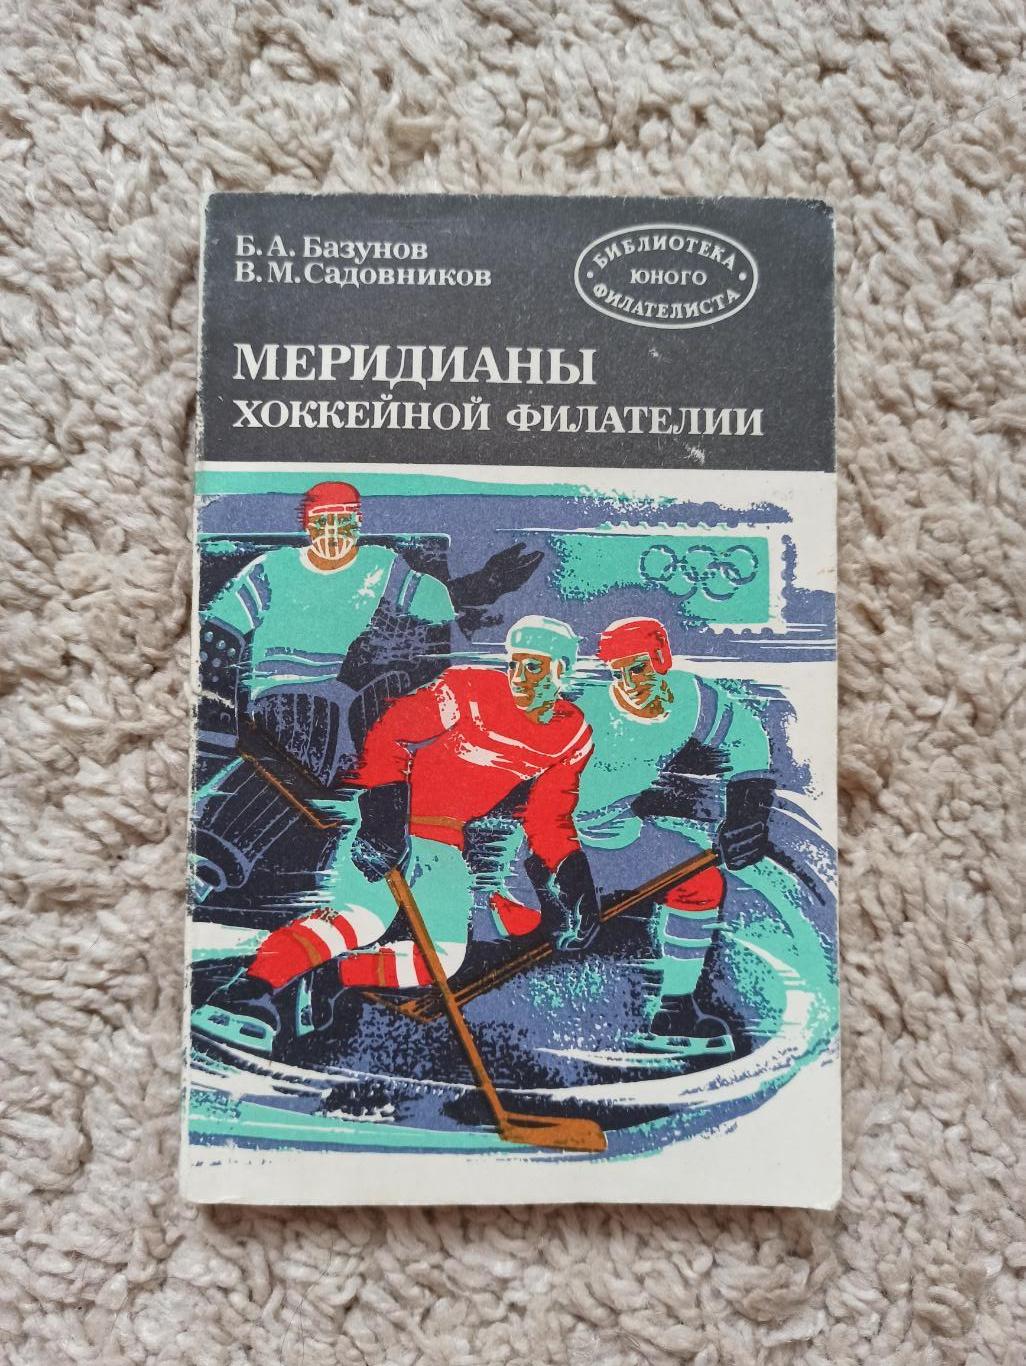 Хоккей,.Базунов, Садовников,.Меридианы хоккейной филателии.Радио и связь,1984.